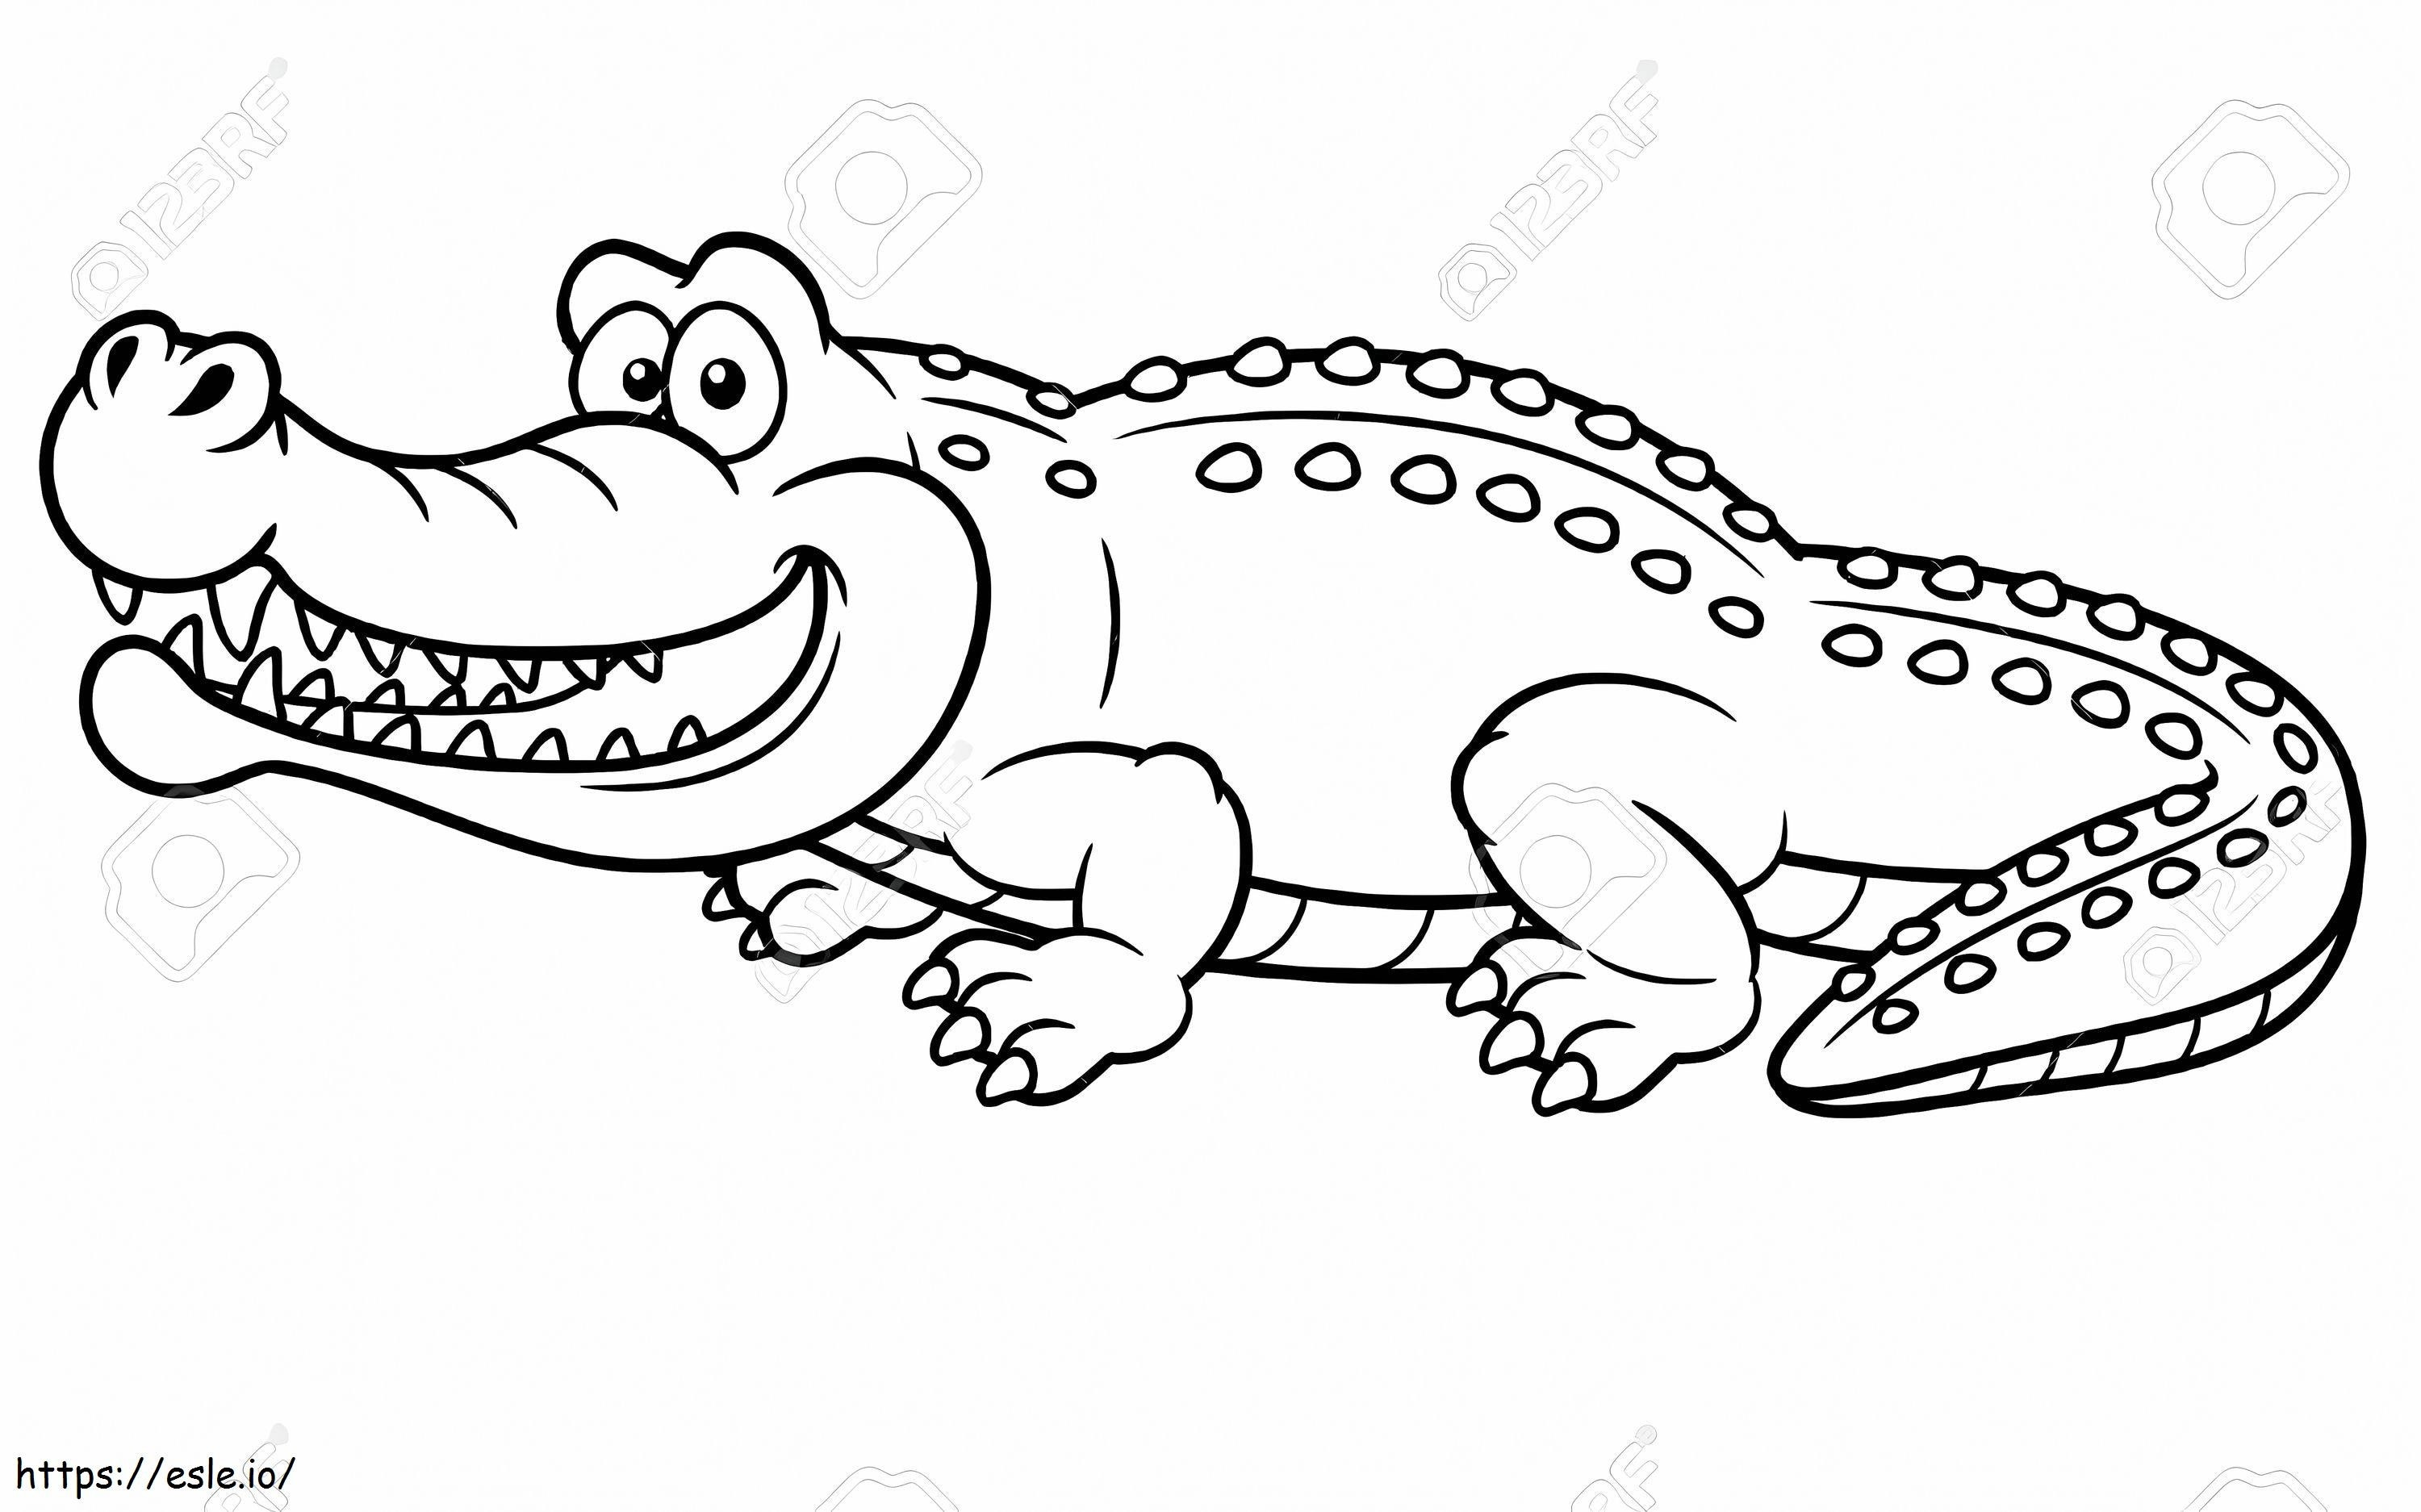 Crocodil fericit de colorat